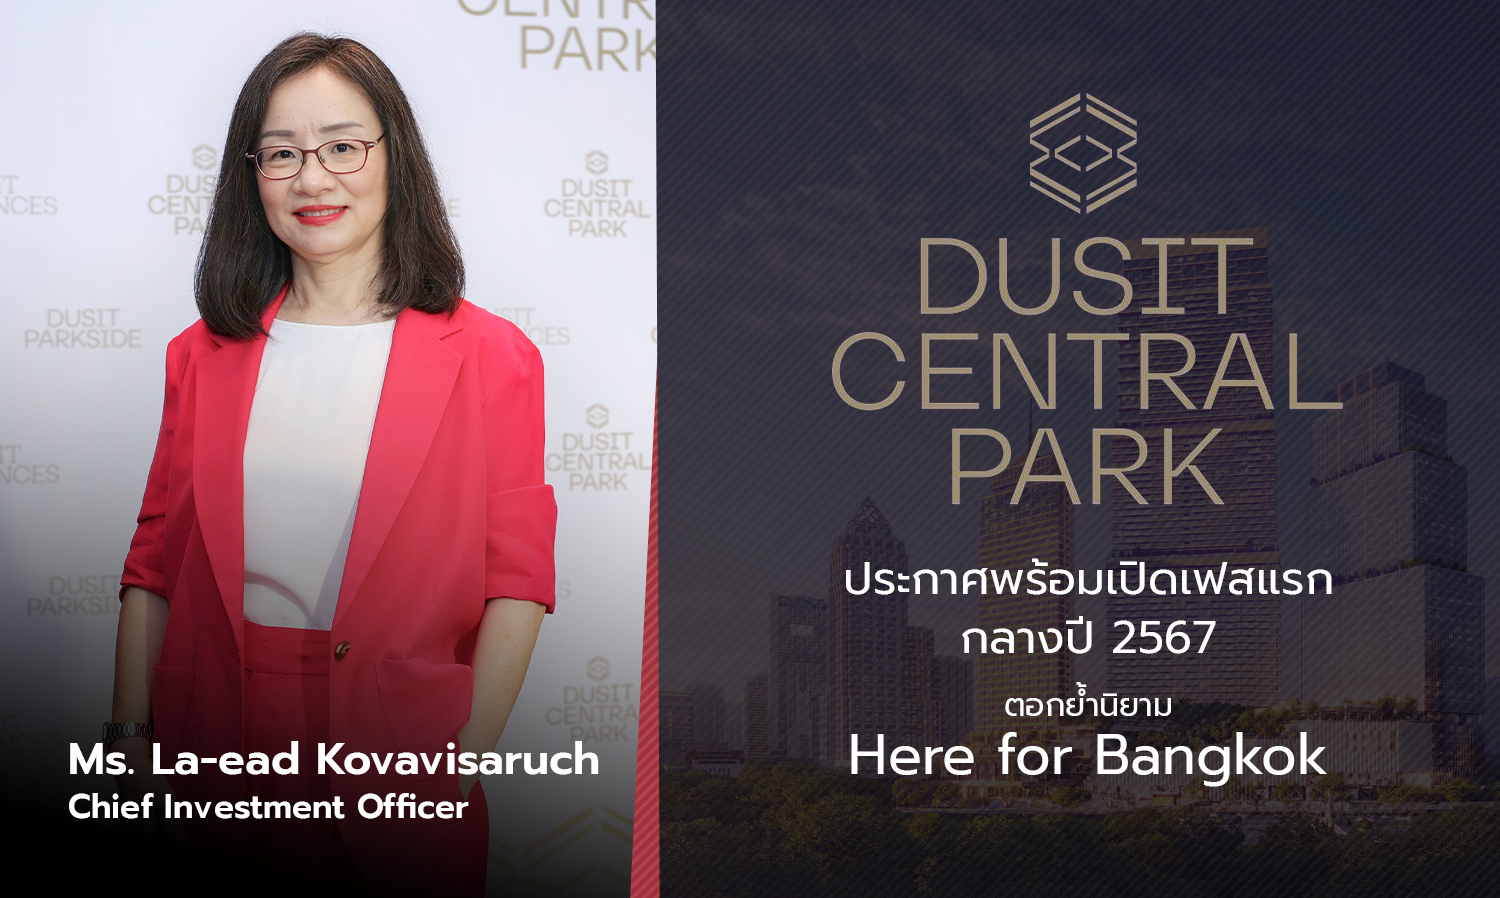 Dusit Central Park ประกาศพร้อมเปิดเฟสแรกกลางปี 2567 ตอกย้ำนิยาม ‘Here for Bangkok’ ตอบโจทย์ไลฟ์สไตล์คนเมืองอย่างครบวงจร